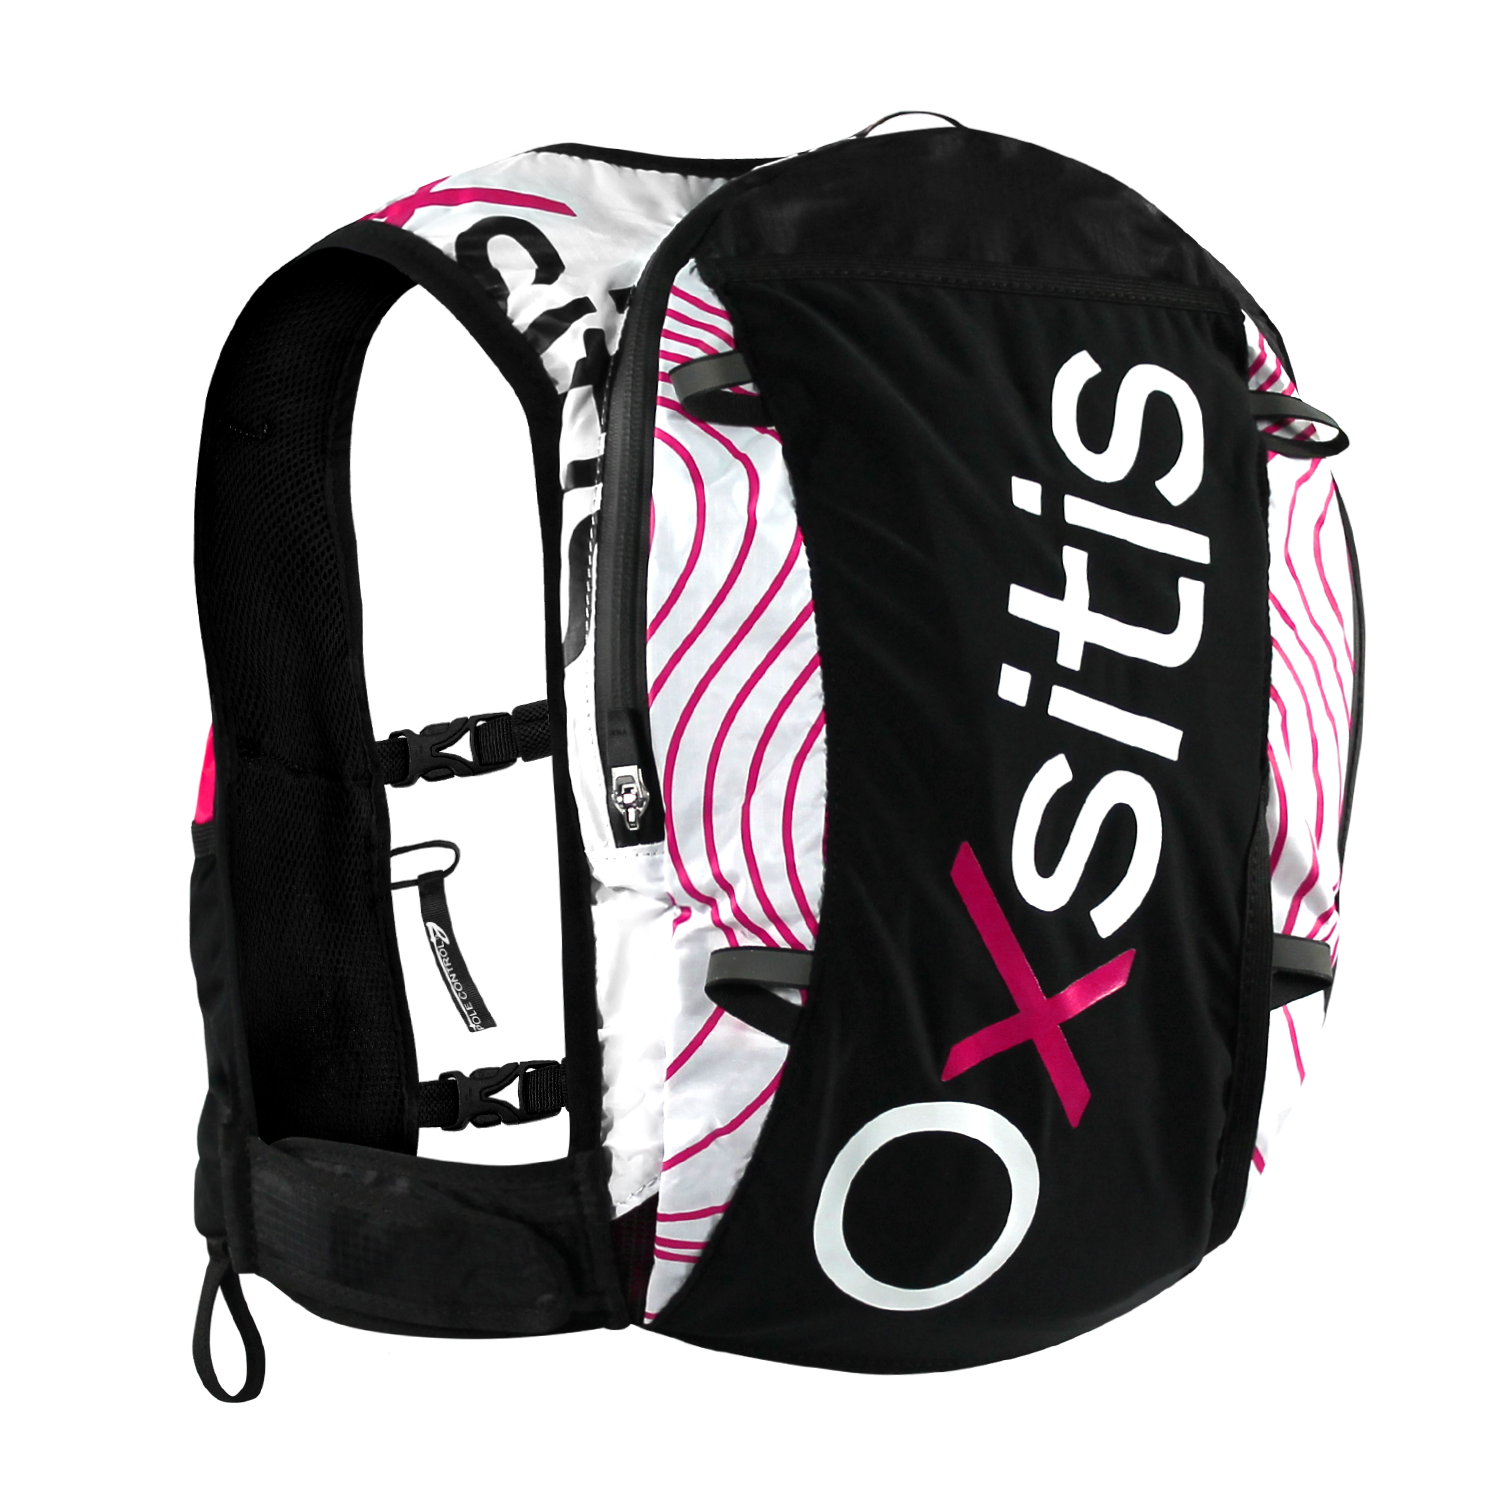 Oxsitis Pulse 12 - Trail running backpack - Women's